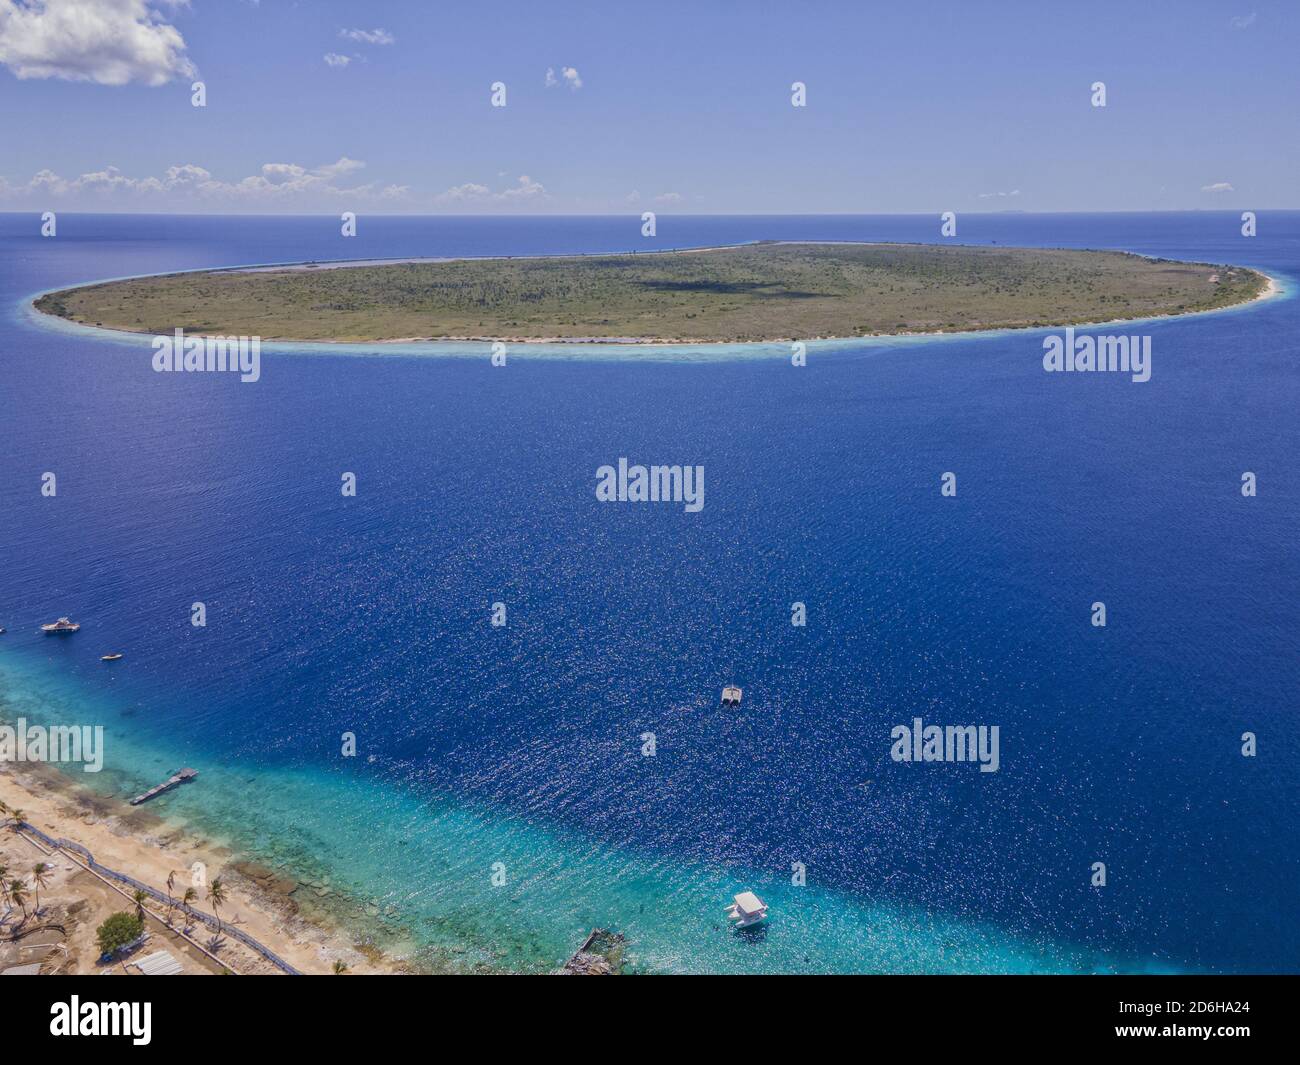 Una vista aerea di Little Bonaire, la piccola isola accanto a Bonaire. Questa piccola isola è abitata sul turista verrà alle piccole spiagge Foto Stock